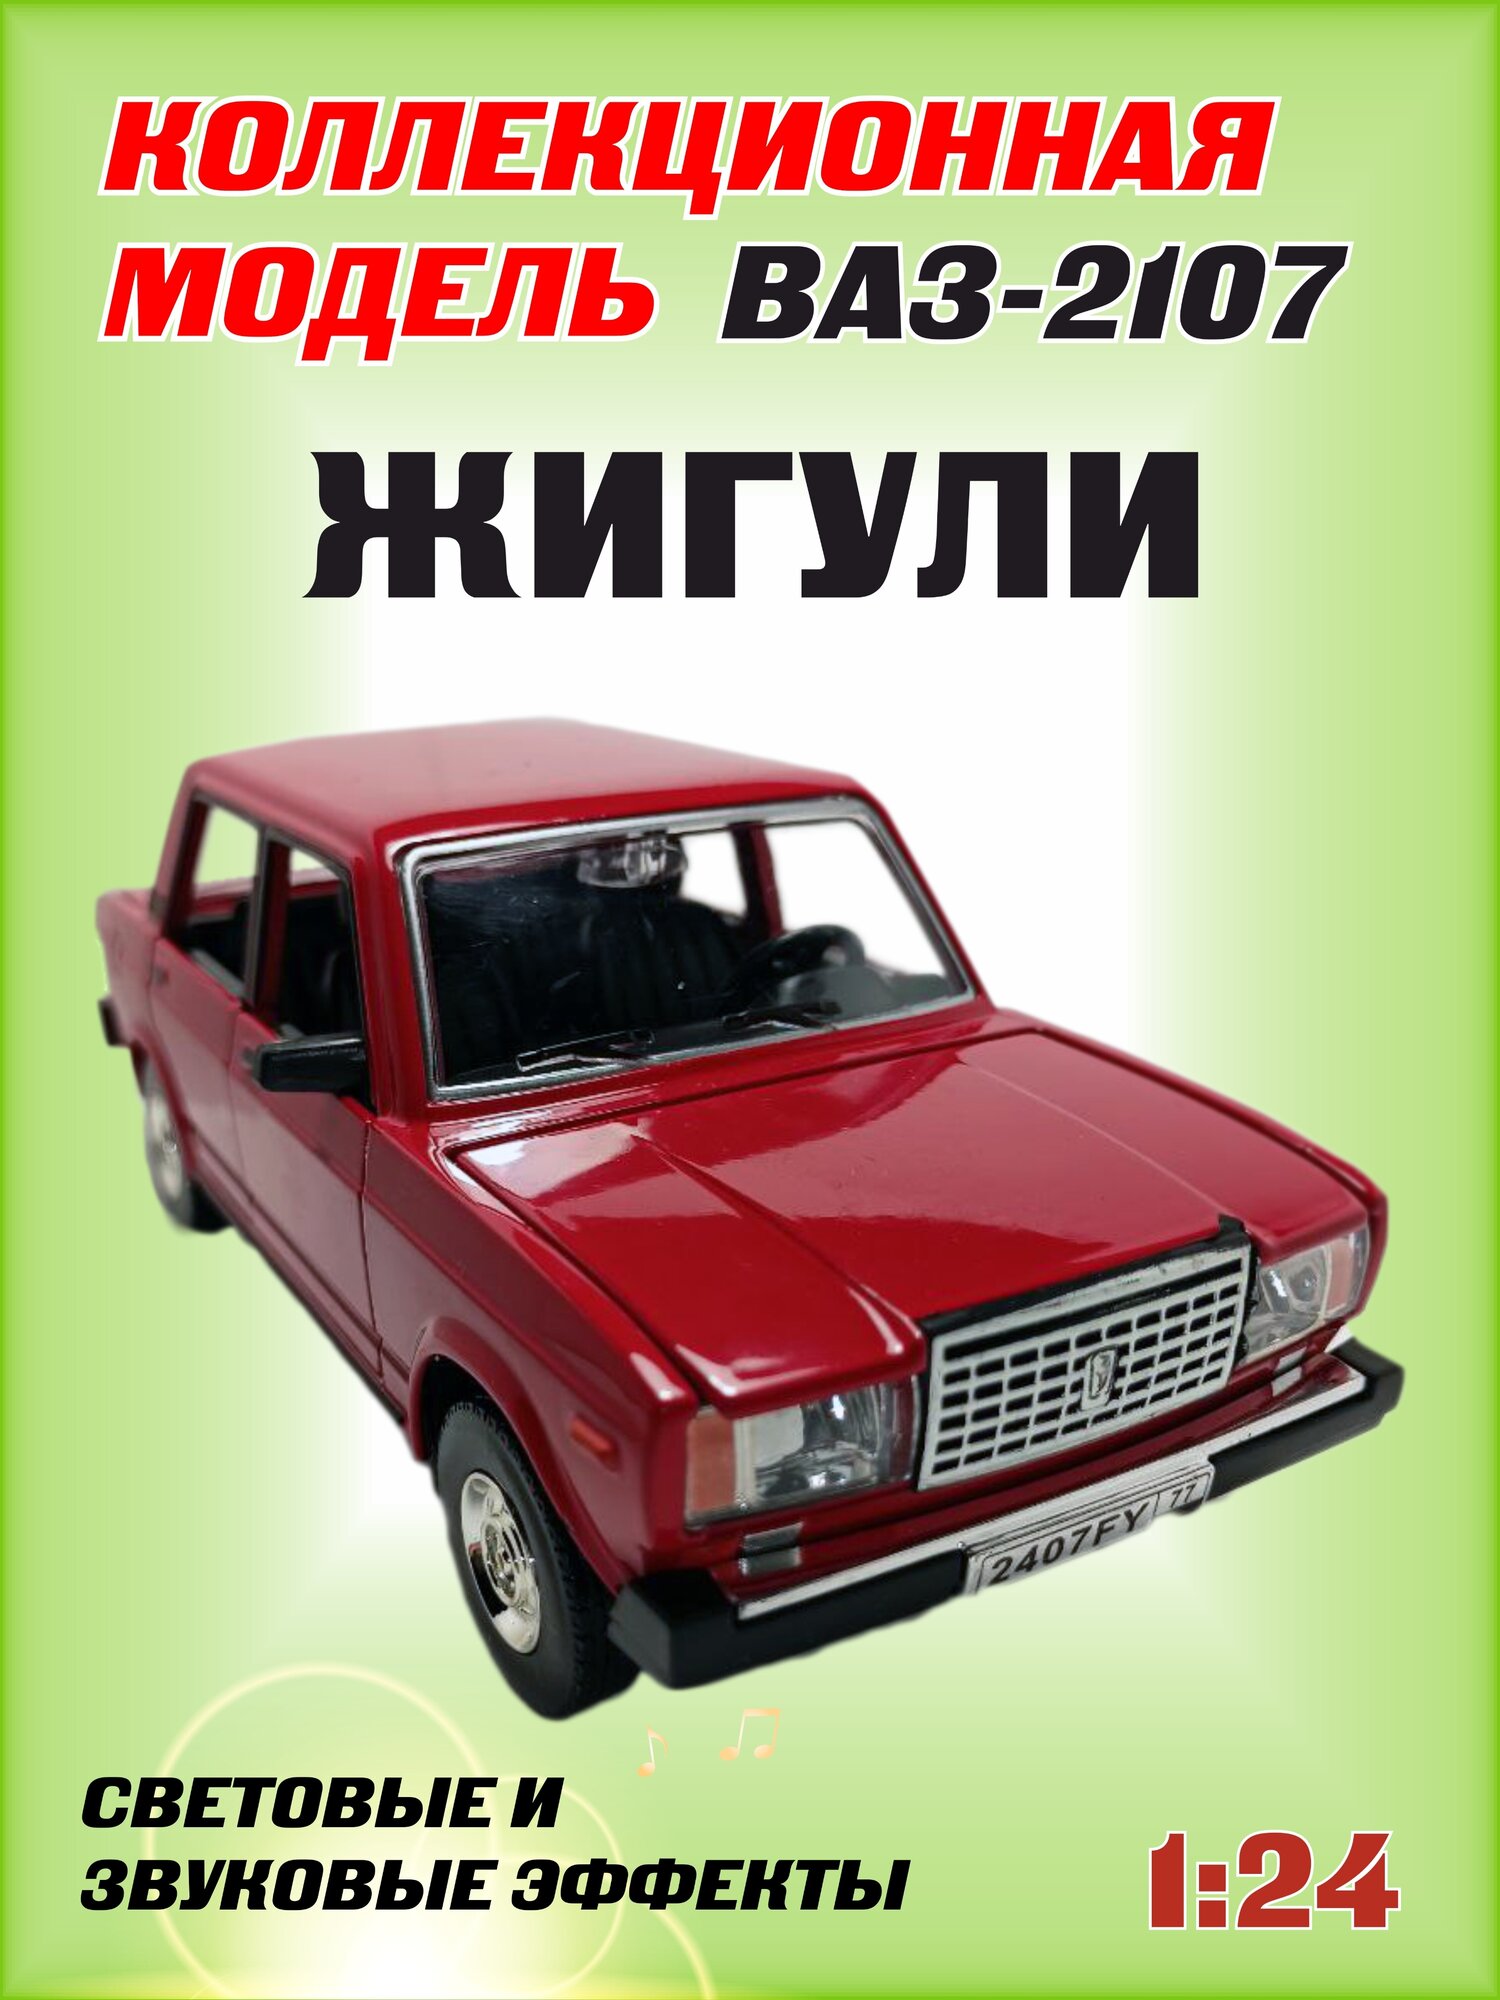 Коллекционная машинка игрушка металлическая Жигули ВАЗ 2107 для мальчиков масштабная модель 1:24 красная2